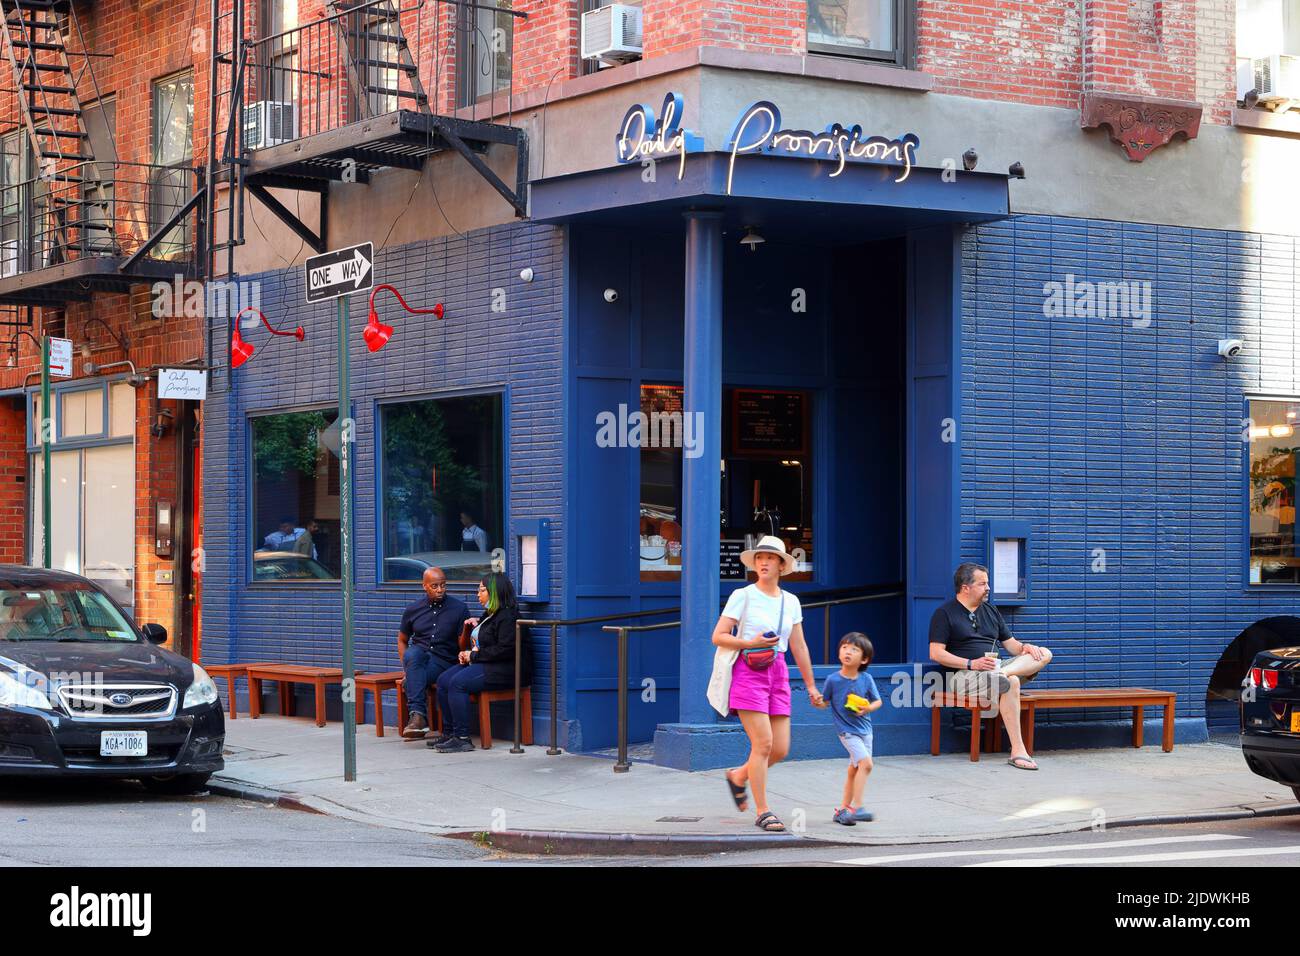 Daily Provides, 29 Bedford St, New York, NYC Foto von einem Café im Viertel West Village in Manhattan. Stockfoto